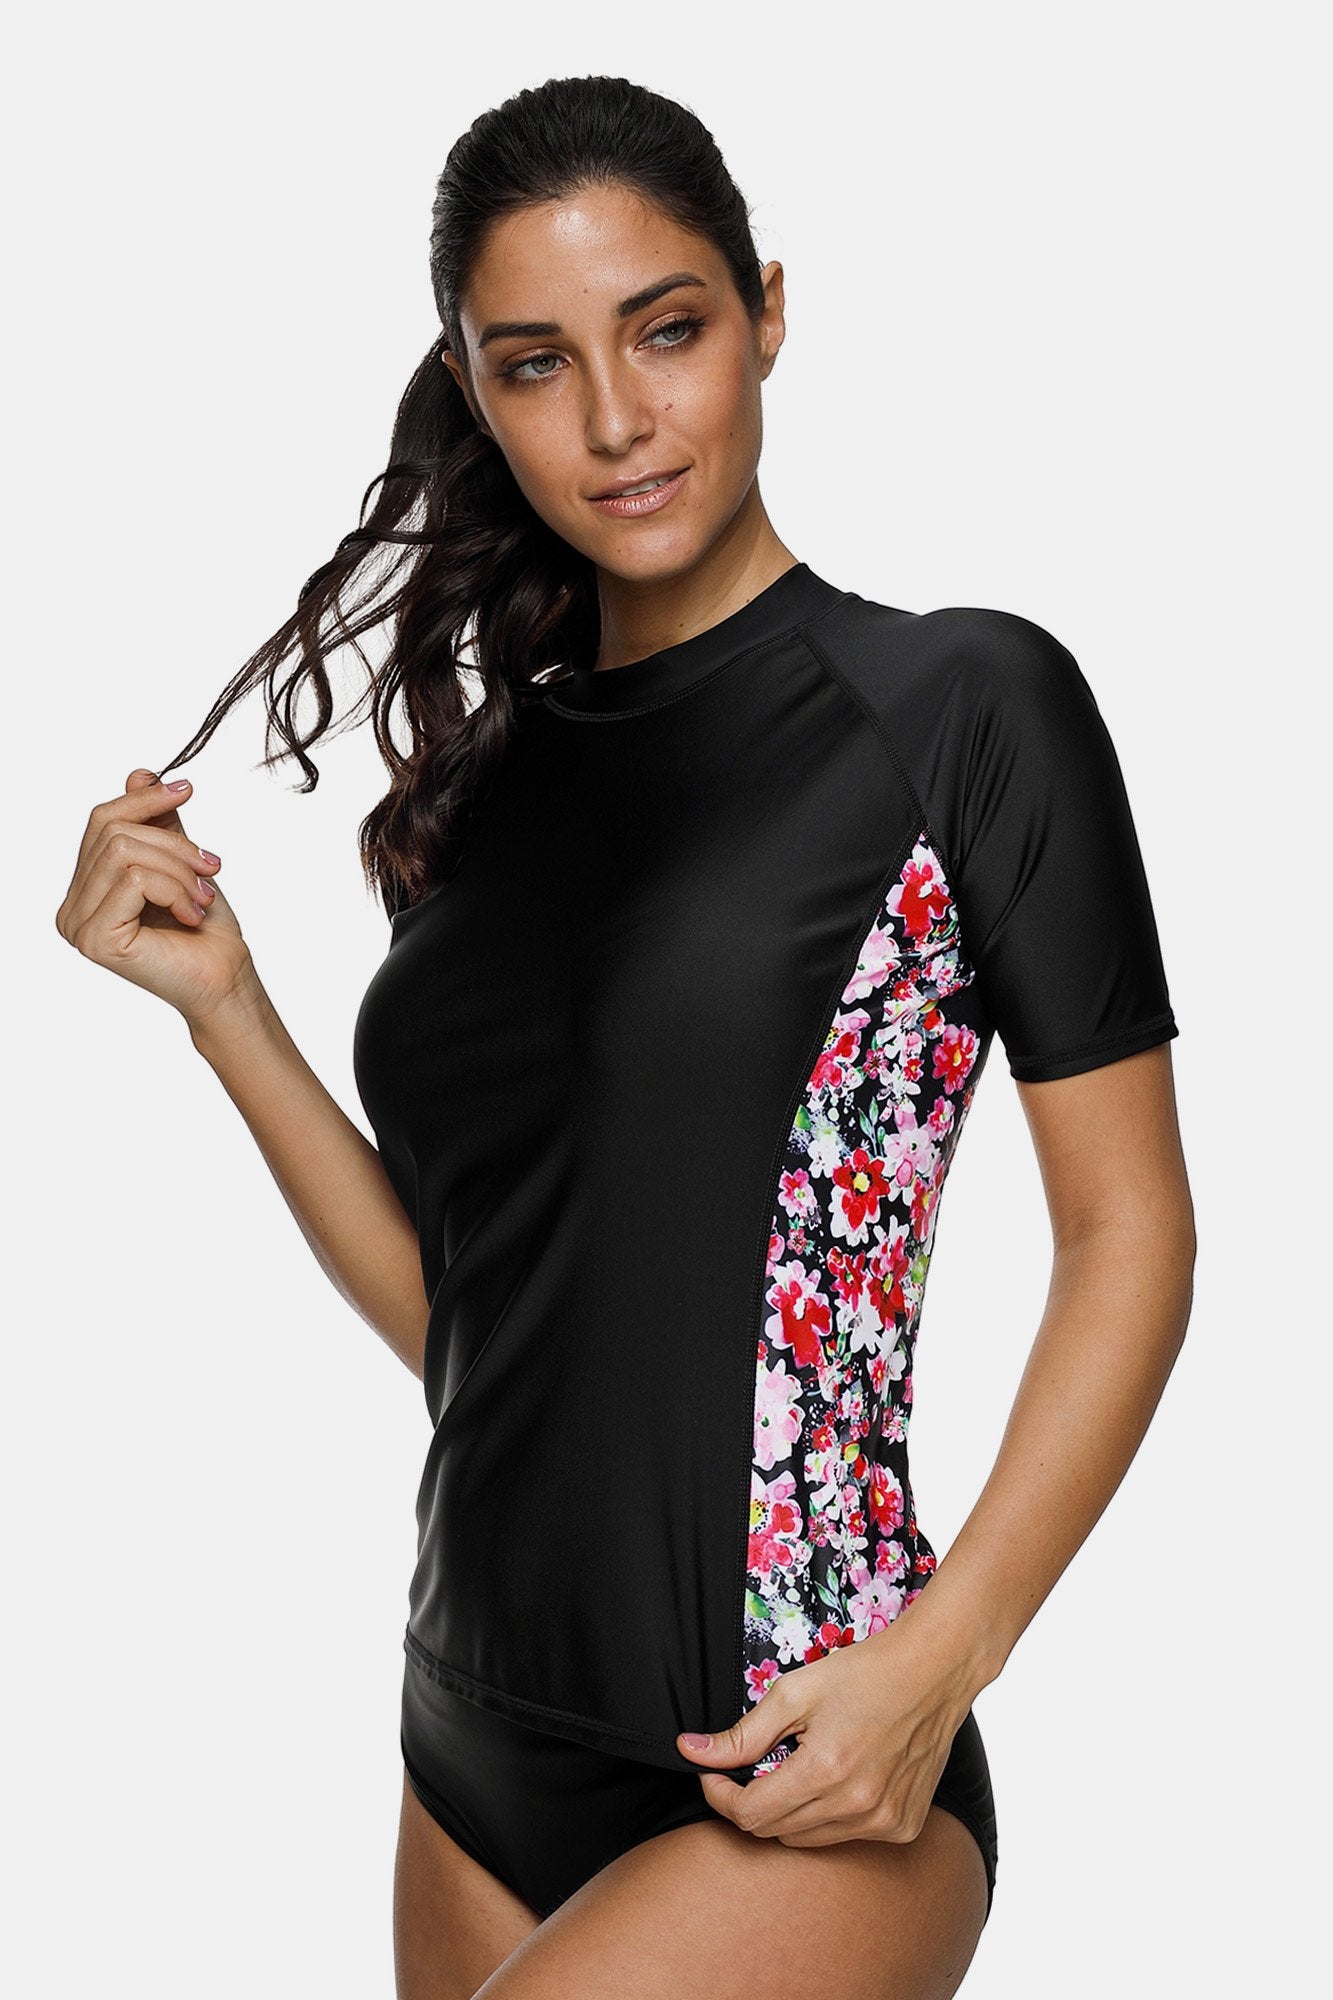 Women's Side Printed Short Sleeve UPF 50+ Rash Guard Swim Shirt-Attraco | Fashion Outdoor Clothing